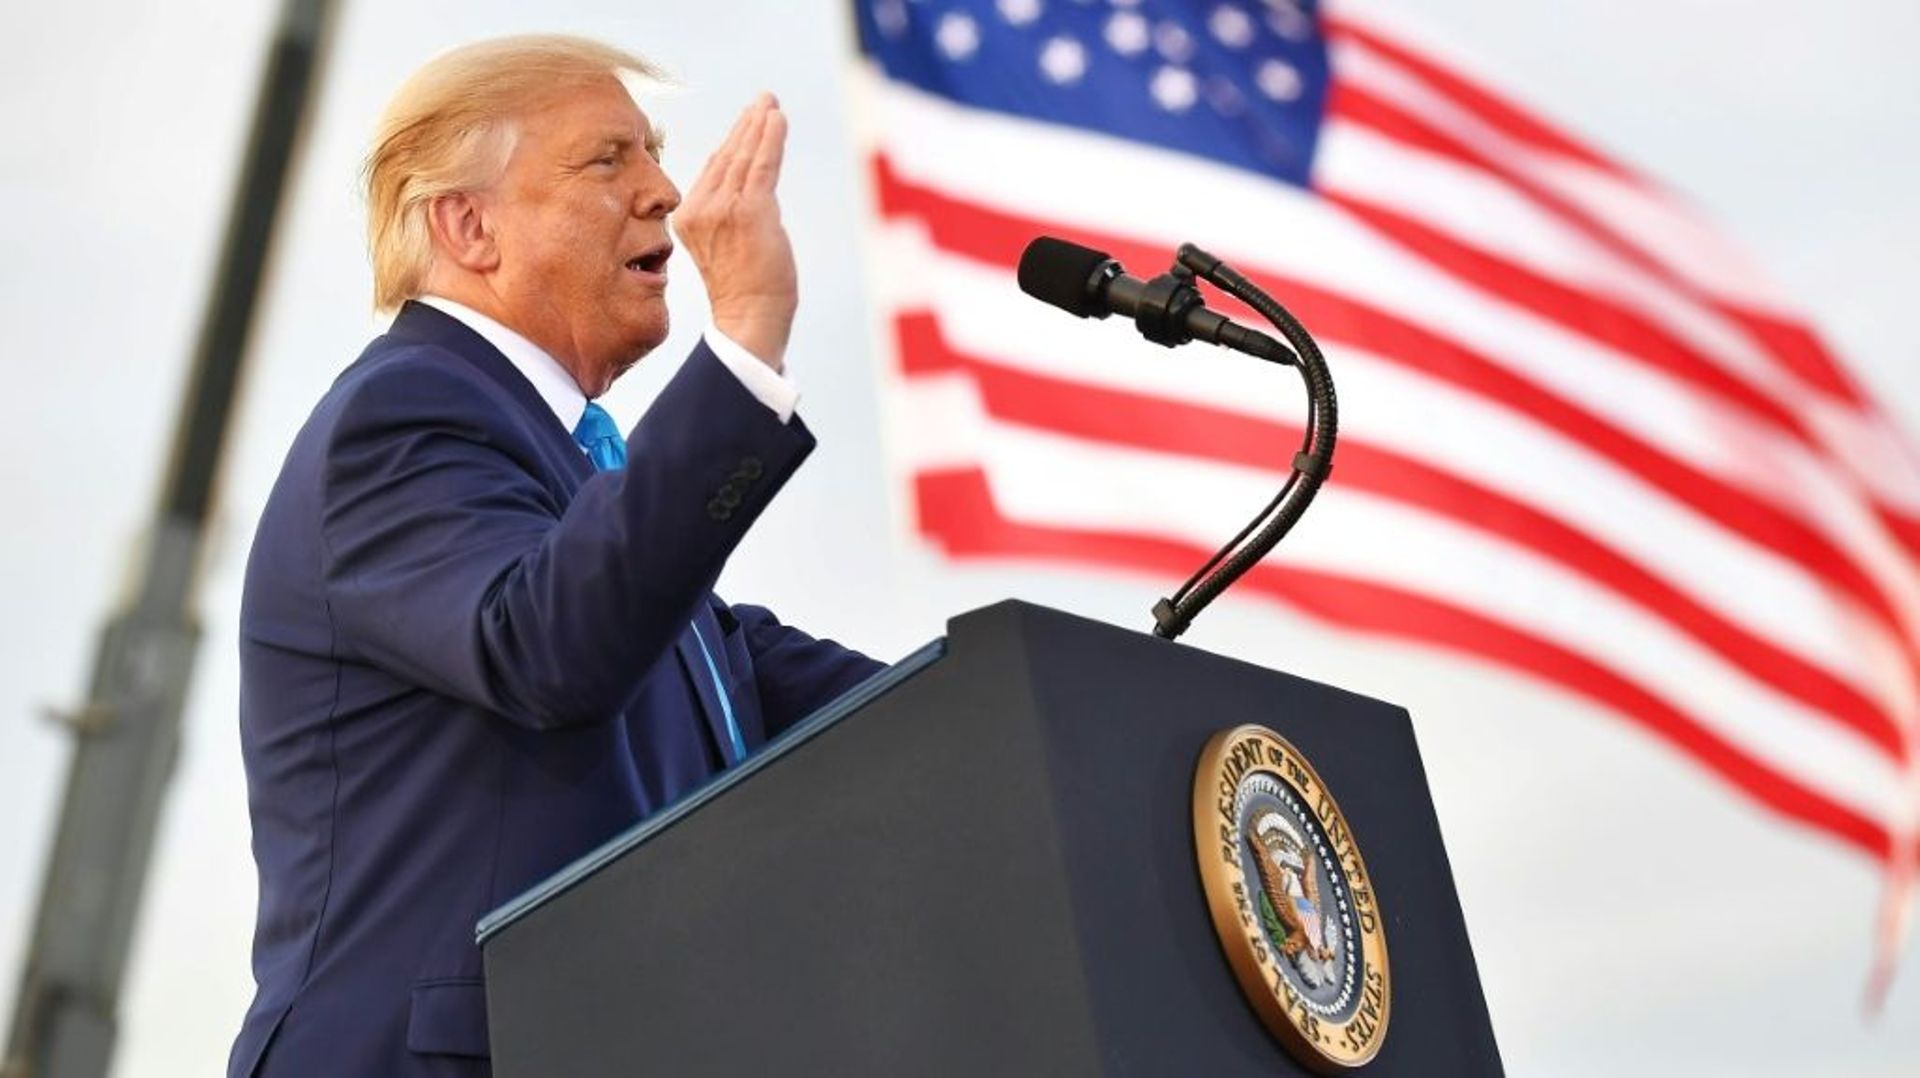 Le président américain Donald Trump s'exprime lors d'un meeting de campagne à Latrobe, en Pennsylvanie, le 3 septembre 2020